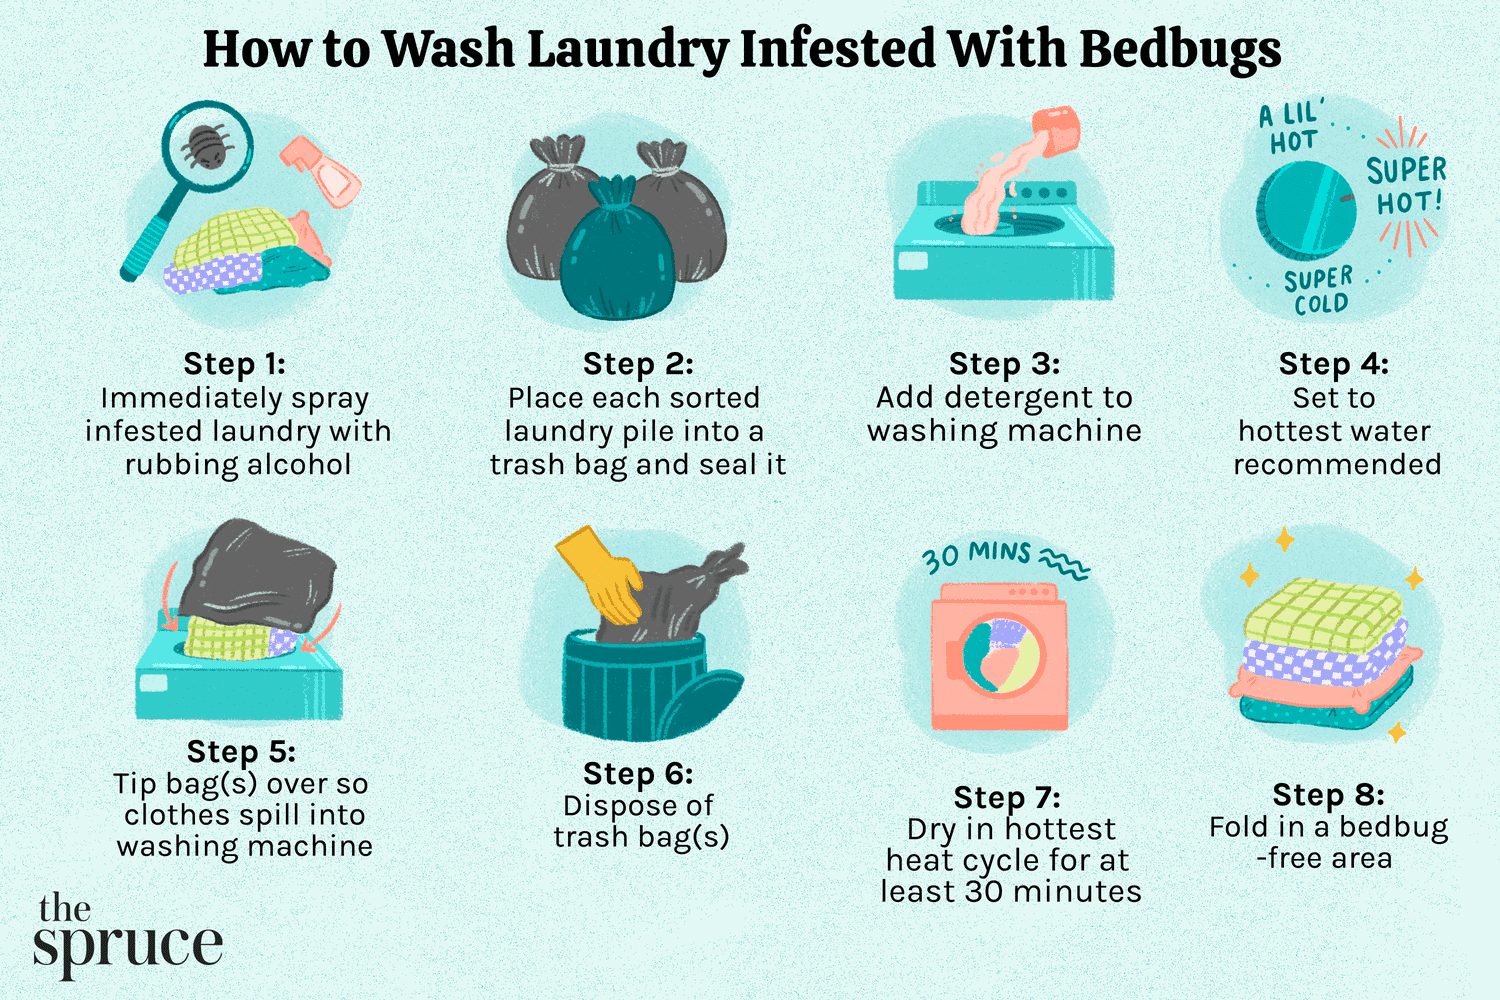 2. Lavar la ropa de cama